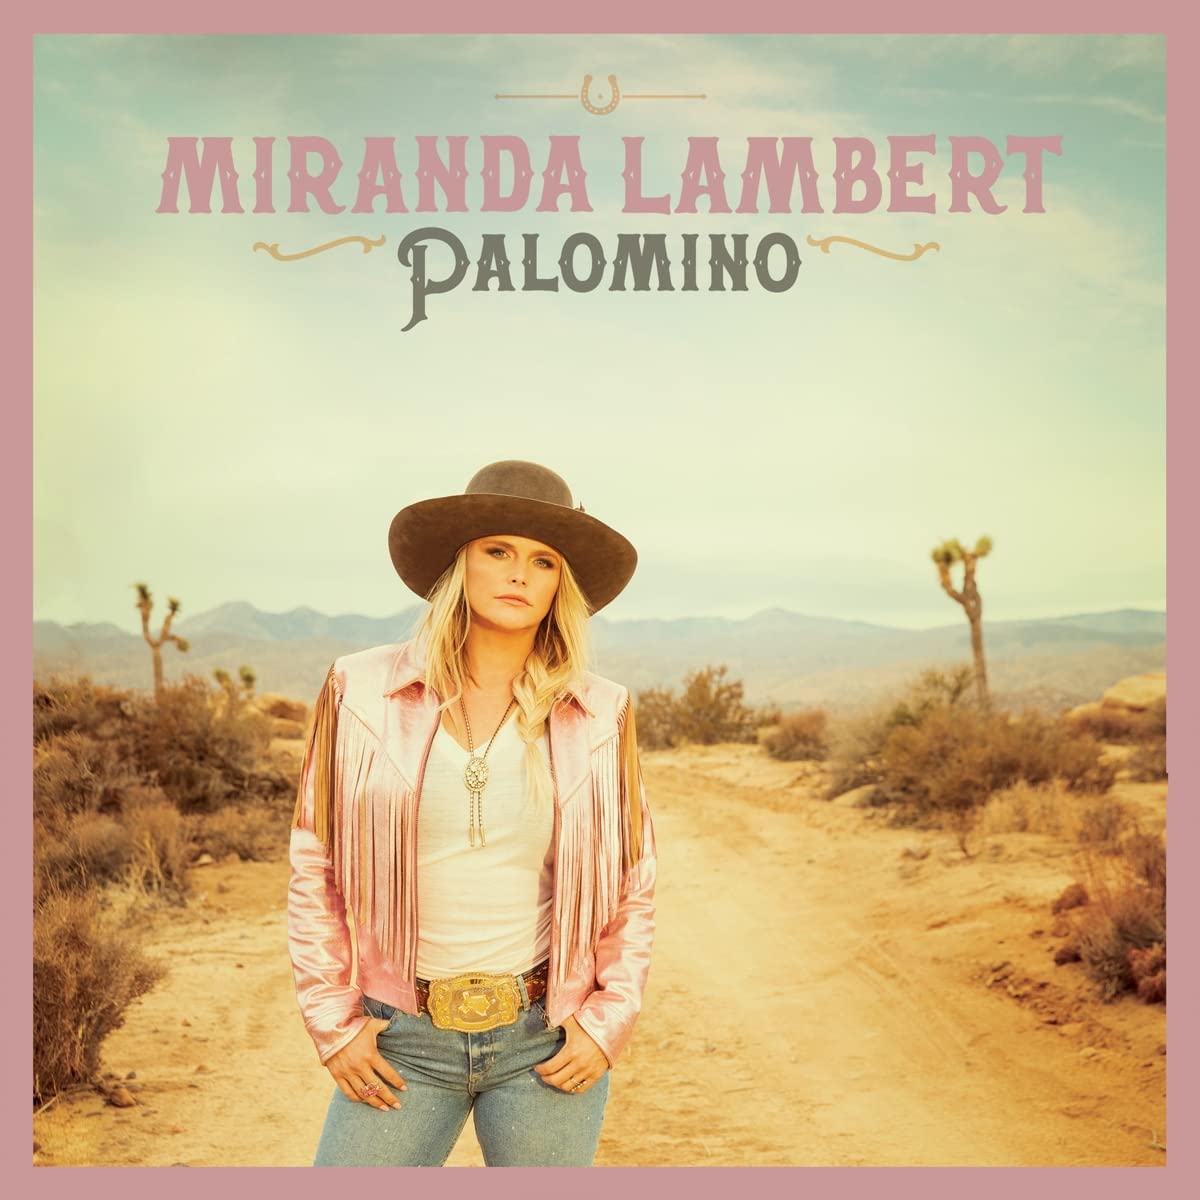 カントリーミュージック界を代表する実力派シンガー＝ミランダ・ランバートの8thアルバム。

USのカントリーミュージック界を代表するアーティスト＝ミランダ・ランバートの8枚目のニュー・アルバム『Palomino』。2021年のグラミー賞でベスト・カントリー・アルバムを受賞した前作『Wildcard』以来、約2年半ぶりのリリースとなる。今作には、アルバムからの先行シングル“Strange” “If I Was a Cowboy”を始め、ゲストにB-52'sを迎えた“Music City Queen”、ミック・ジャガーの1993年のソロ・アルバムのタイトルトラック曲 “Wandering Spirit”のカバー等、バラエティーに富んだ全15曲を収録。

＜収録内容＞
1. Actin' Up
2. Scenes
3. In His Arms
4. Geraldene
5. Tourist
6. Music City Queen / Miranda Lambert feat. The B-52's
7. Strange
8. Wandering Spirit
9. I'll Be Lovin' You
10. That's What Makes the Jukebox Play
11. Country Money
12 If I Was a Cowboy
13. Waxahachie
14. Pursuit of Happiness
15. Carousel